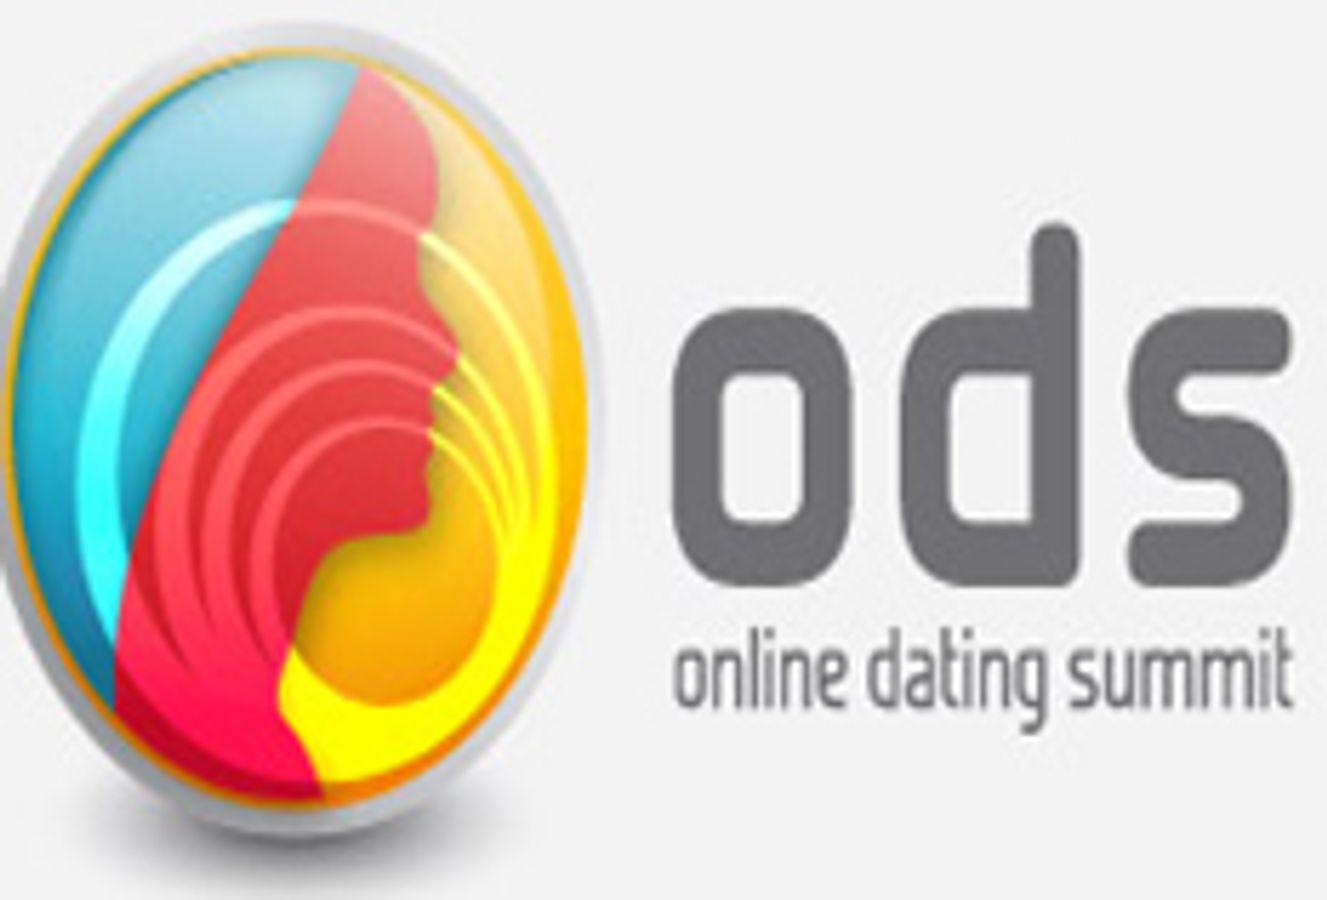 Online Dating Summit